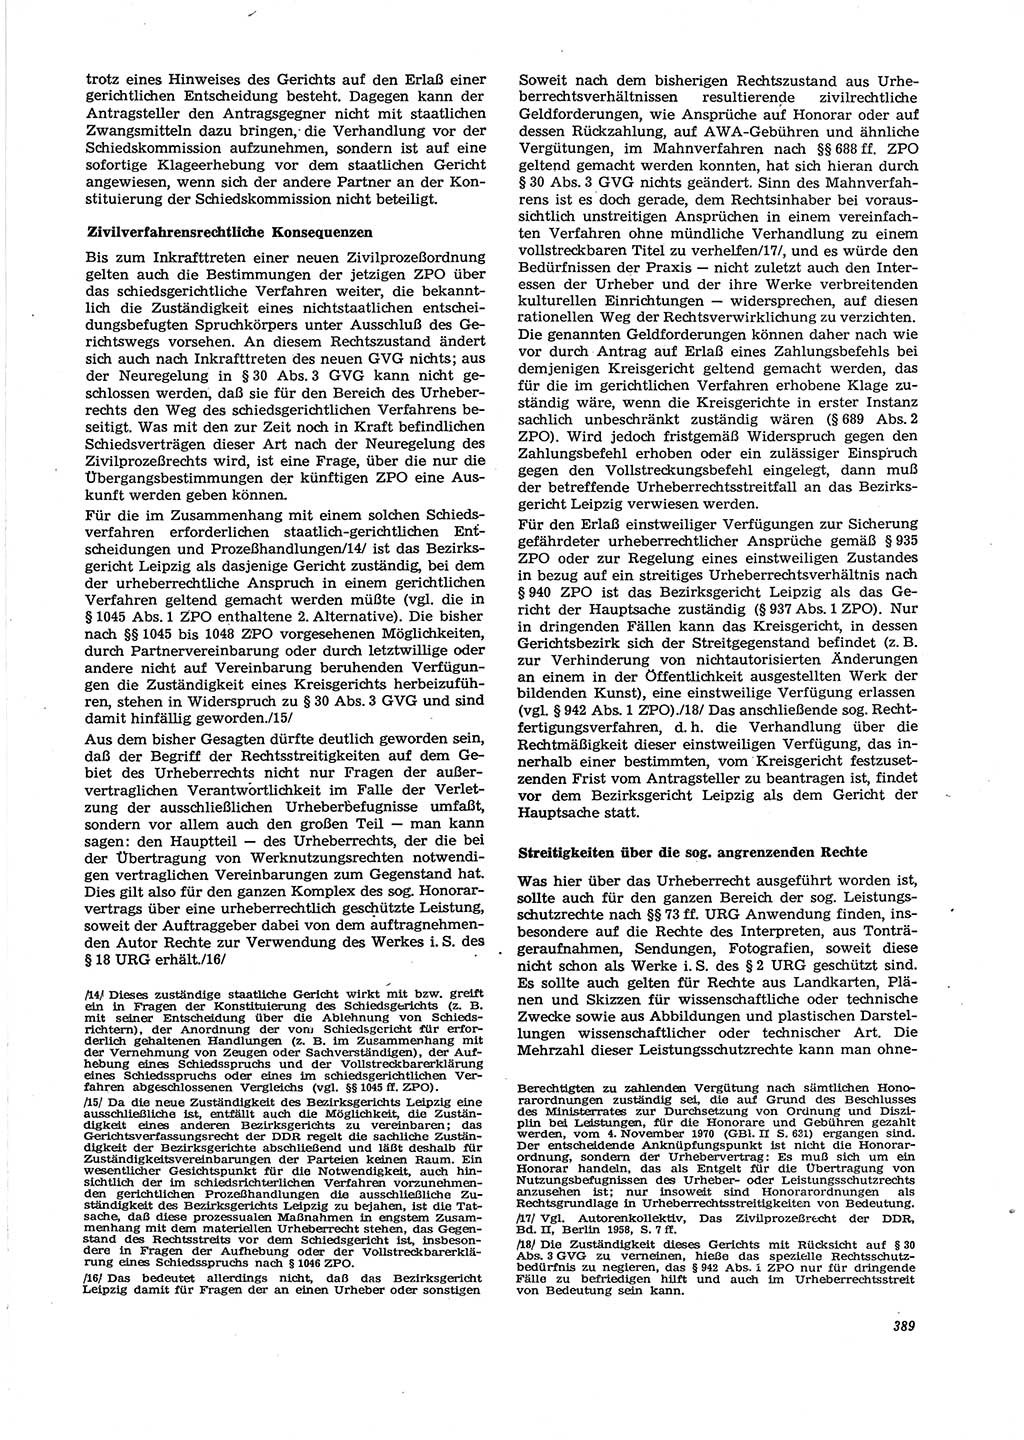 Neue Justiz (NJ), Zeitschrift für Recht und Rechtswissenschaft [Deutsche Demokratische Republik (DDR)], 29. Jahrgang 1975, Seite 389 (NJ DDR 1975, S. 389)